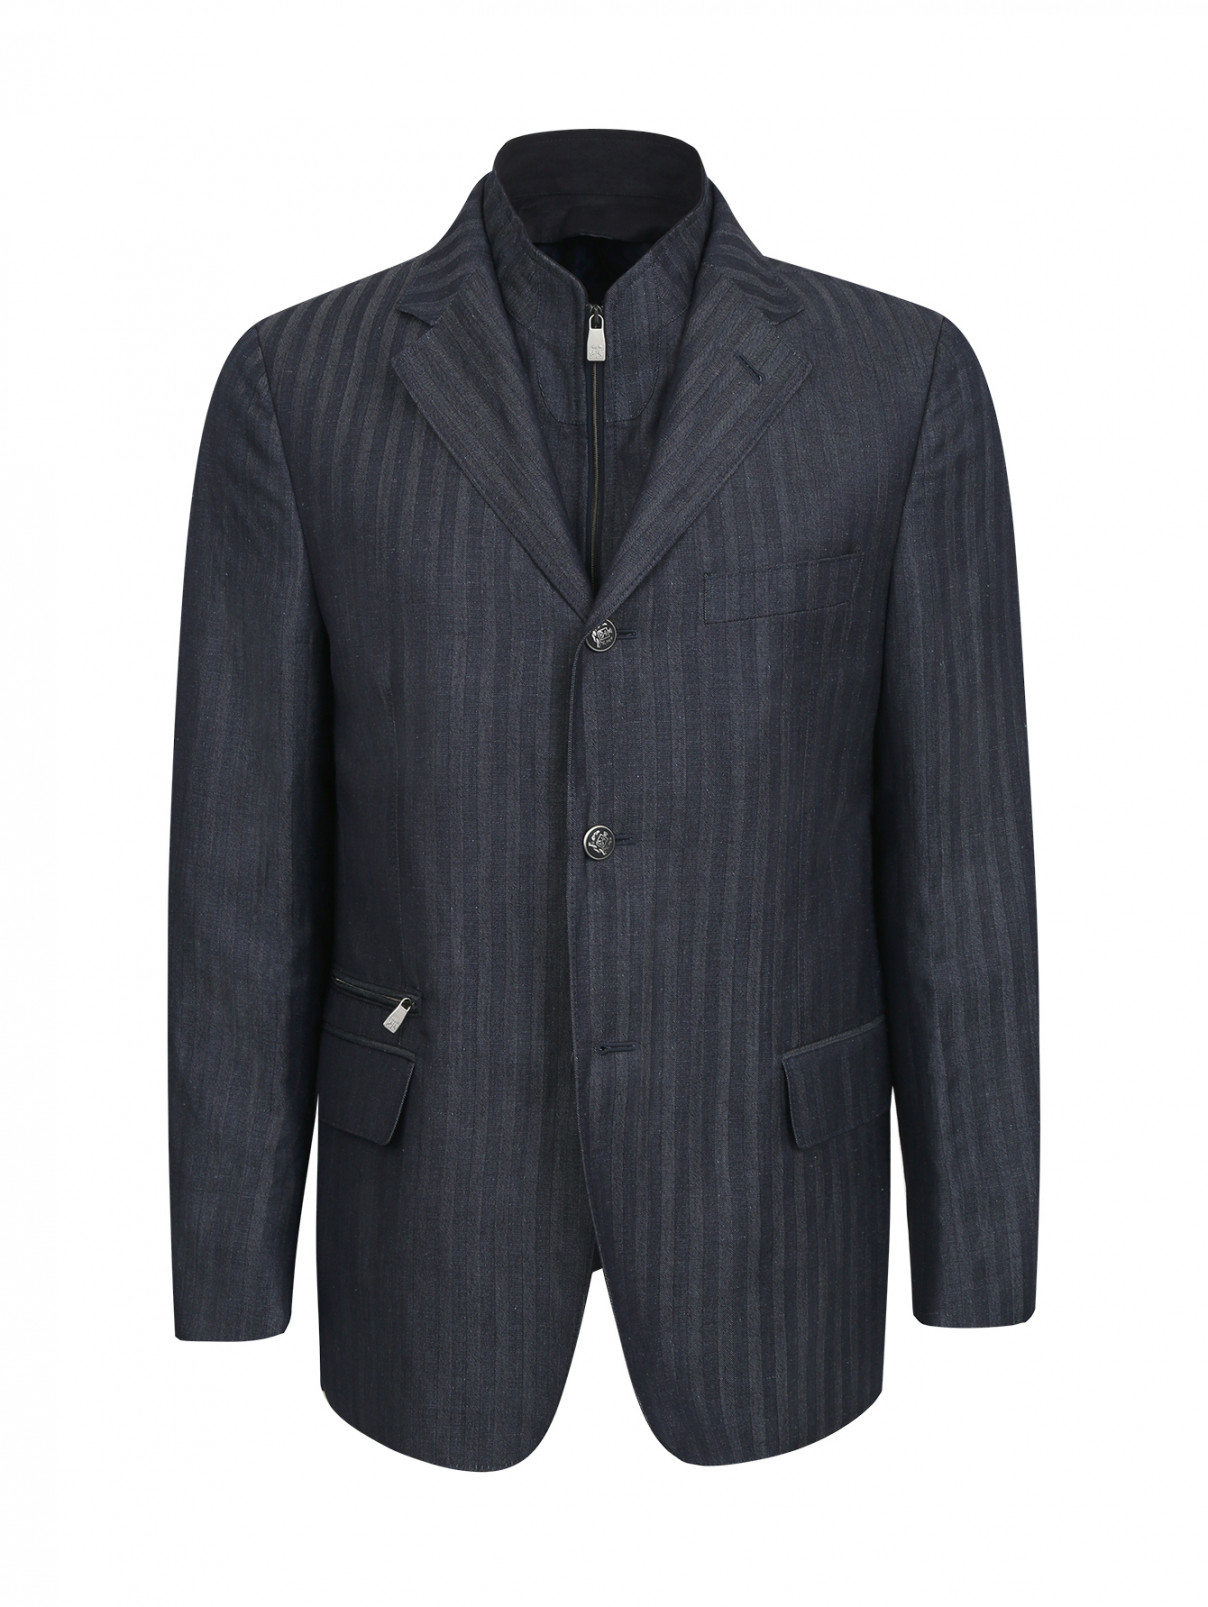 Пиджак из льна и шерсти с подстежкой Corneliani ID  –  Общий вид  – Цвет:  Синий